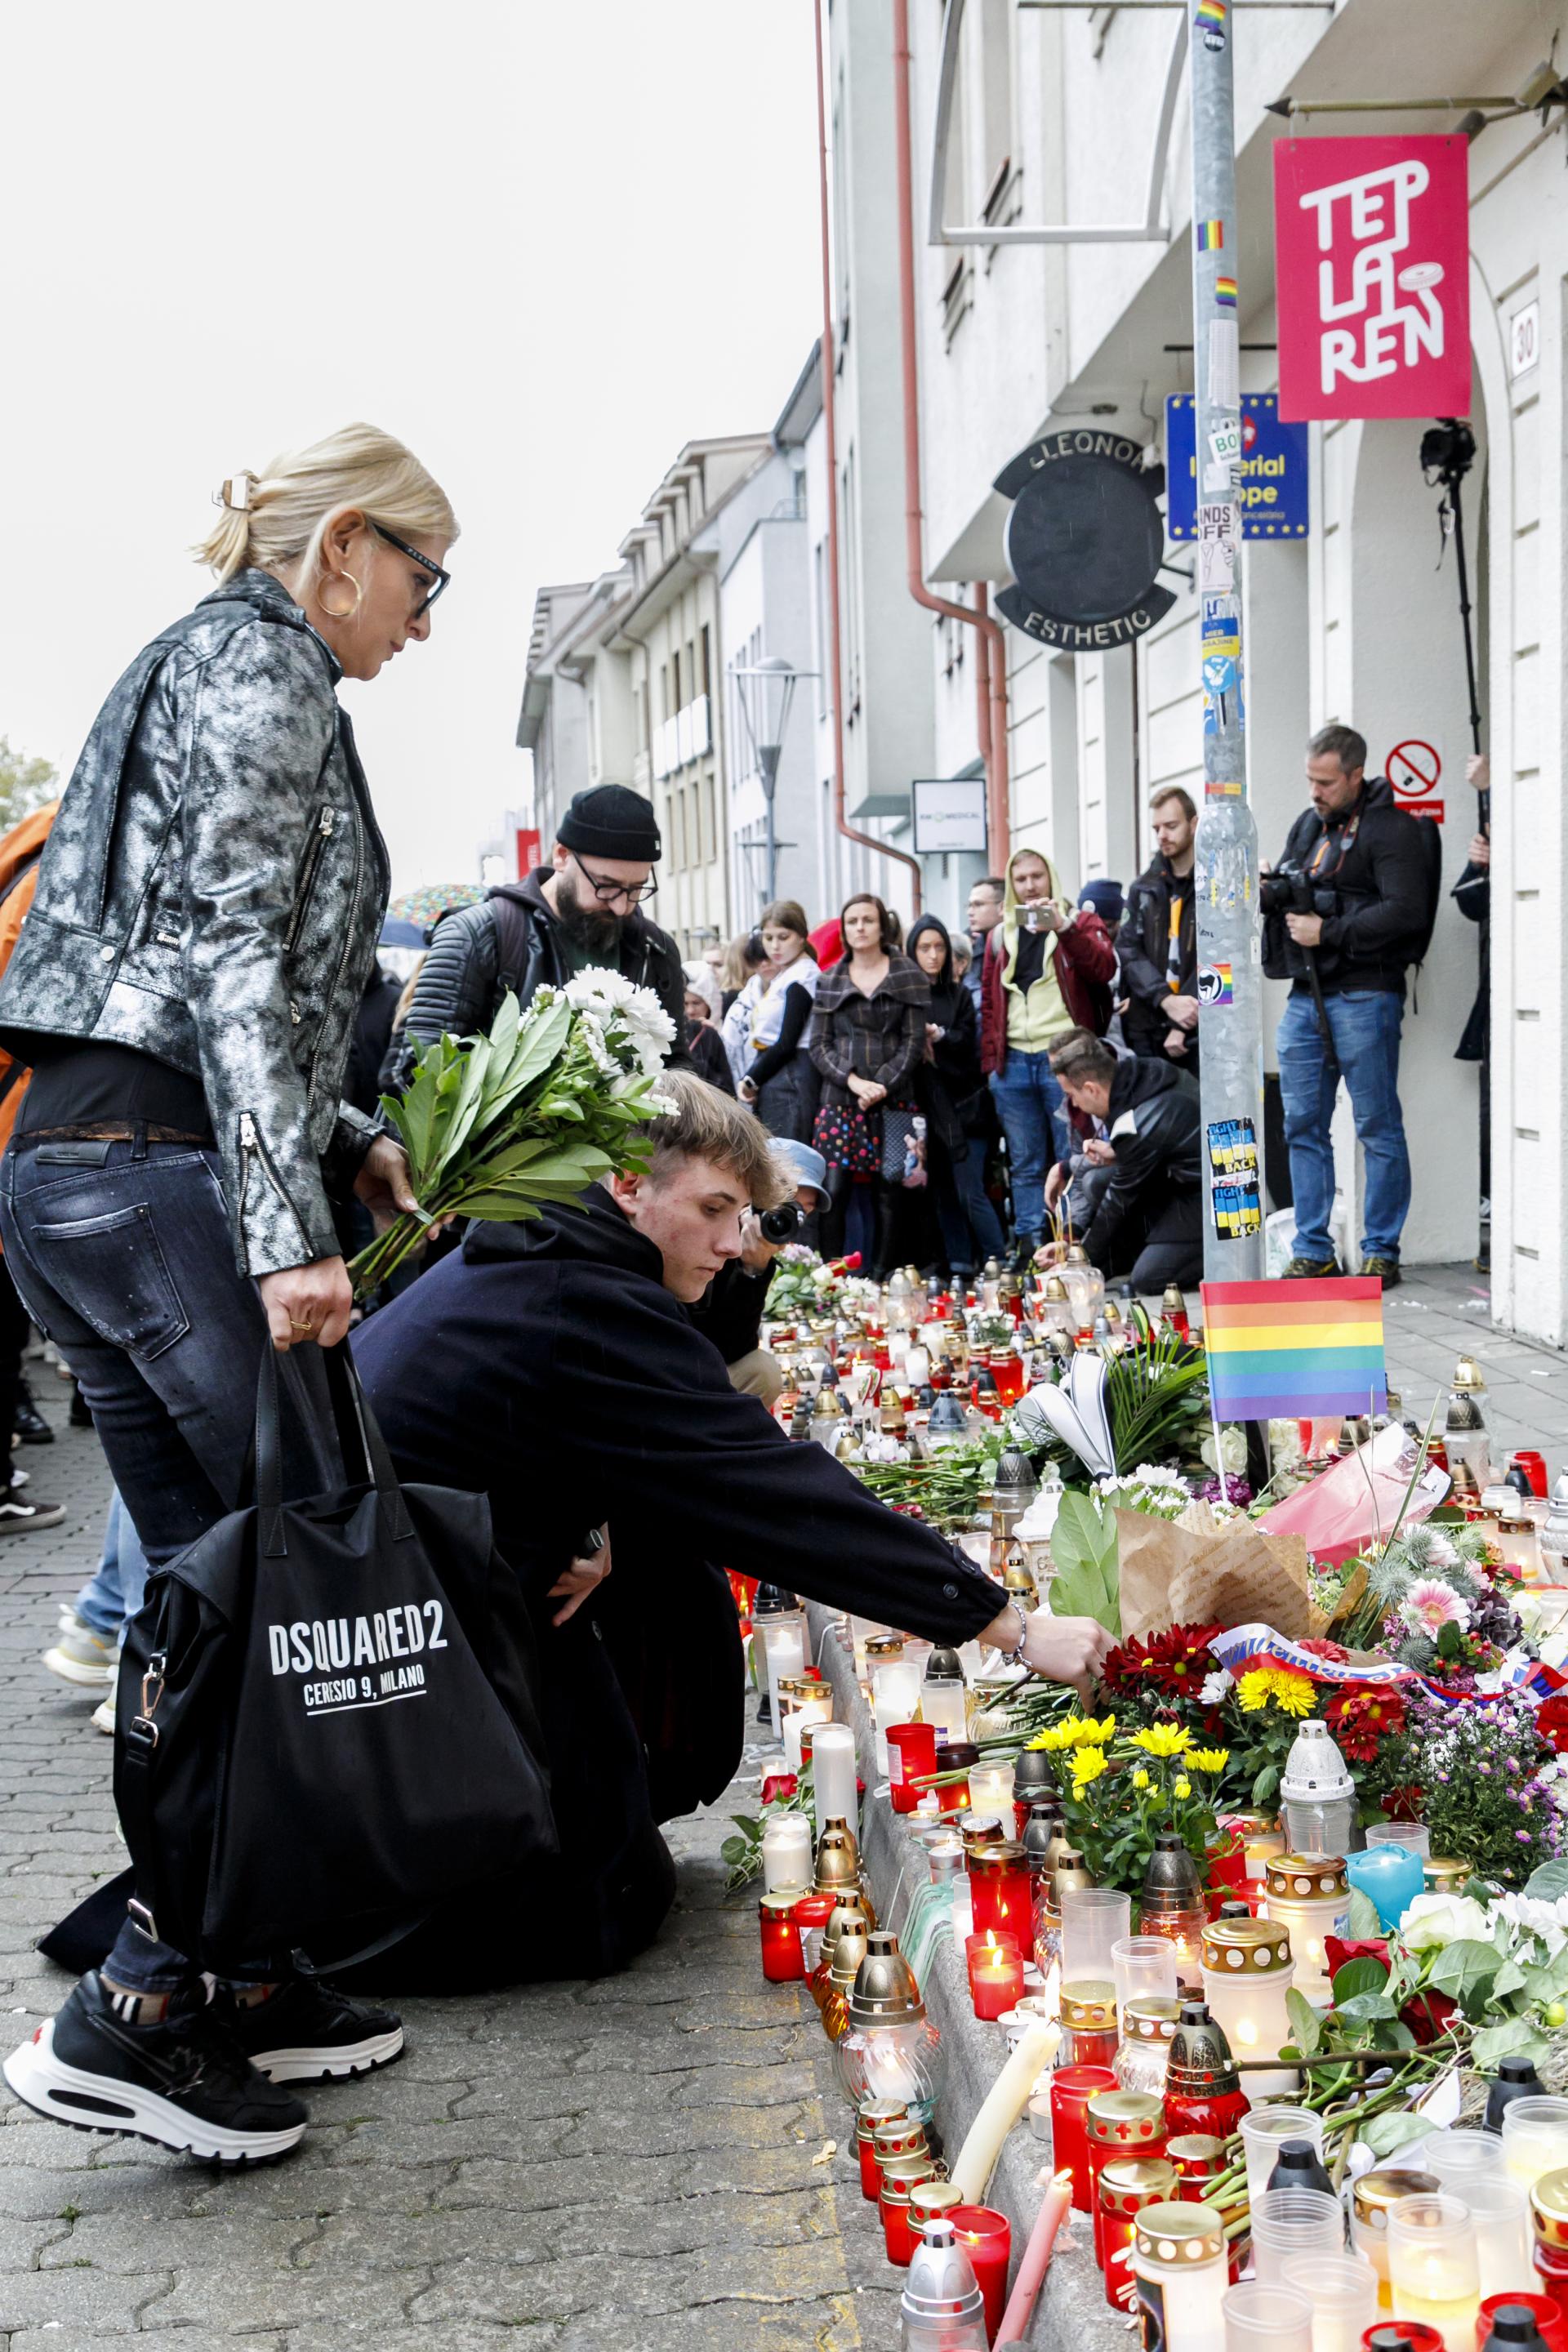 Slovensko nie je homofóbne, myslí si Blanár. Podmienky LGBTI sa zhoršili, oponuje Cigániková (veľká anketa)